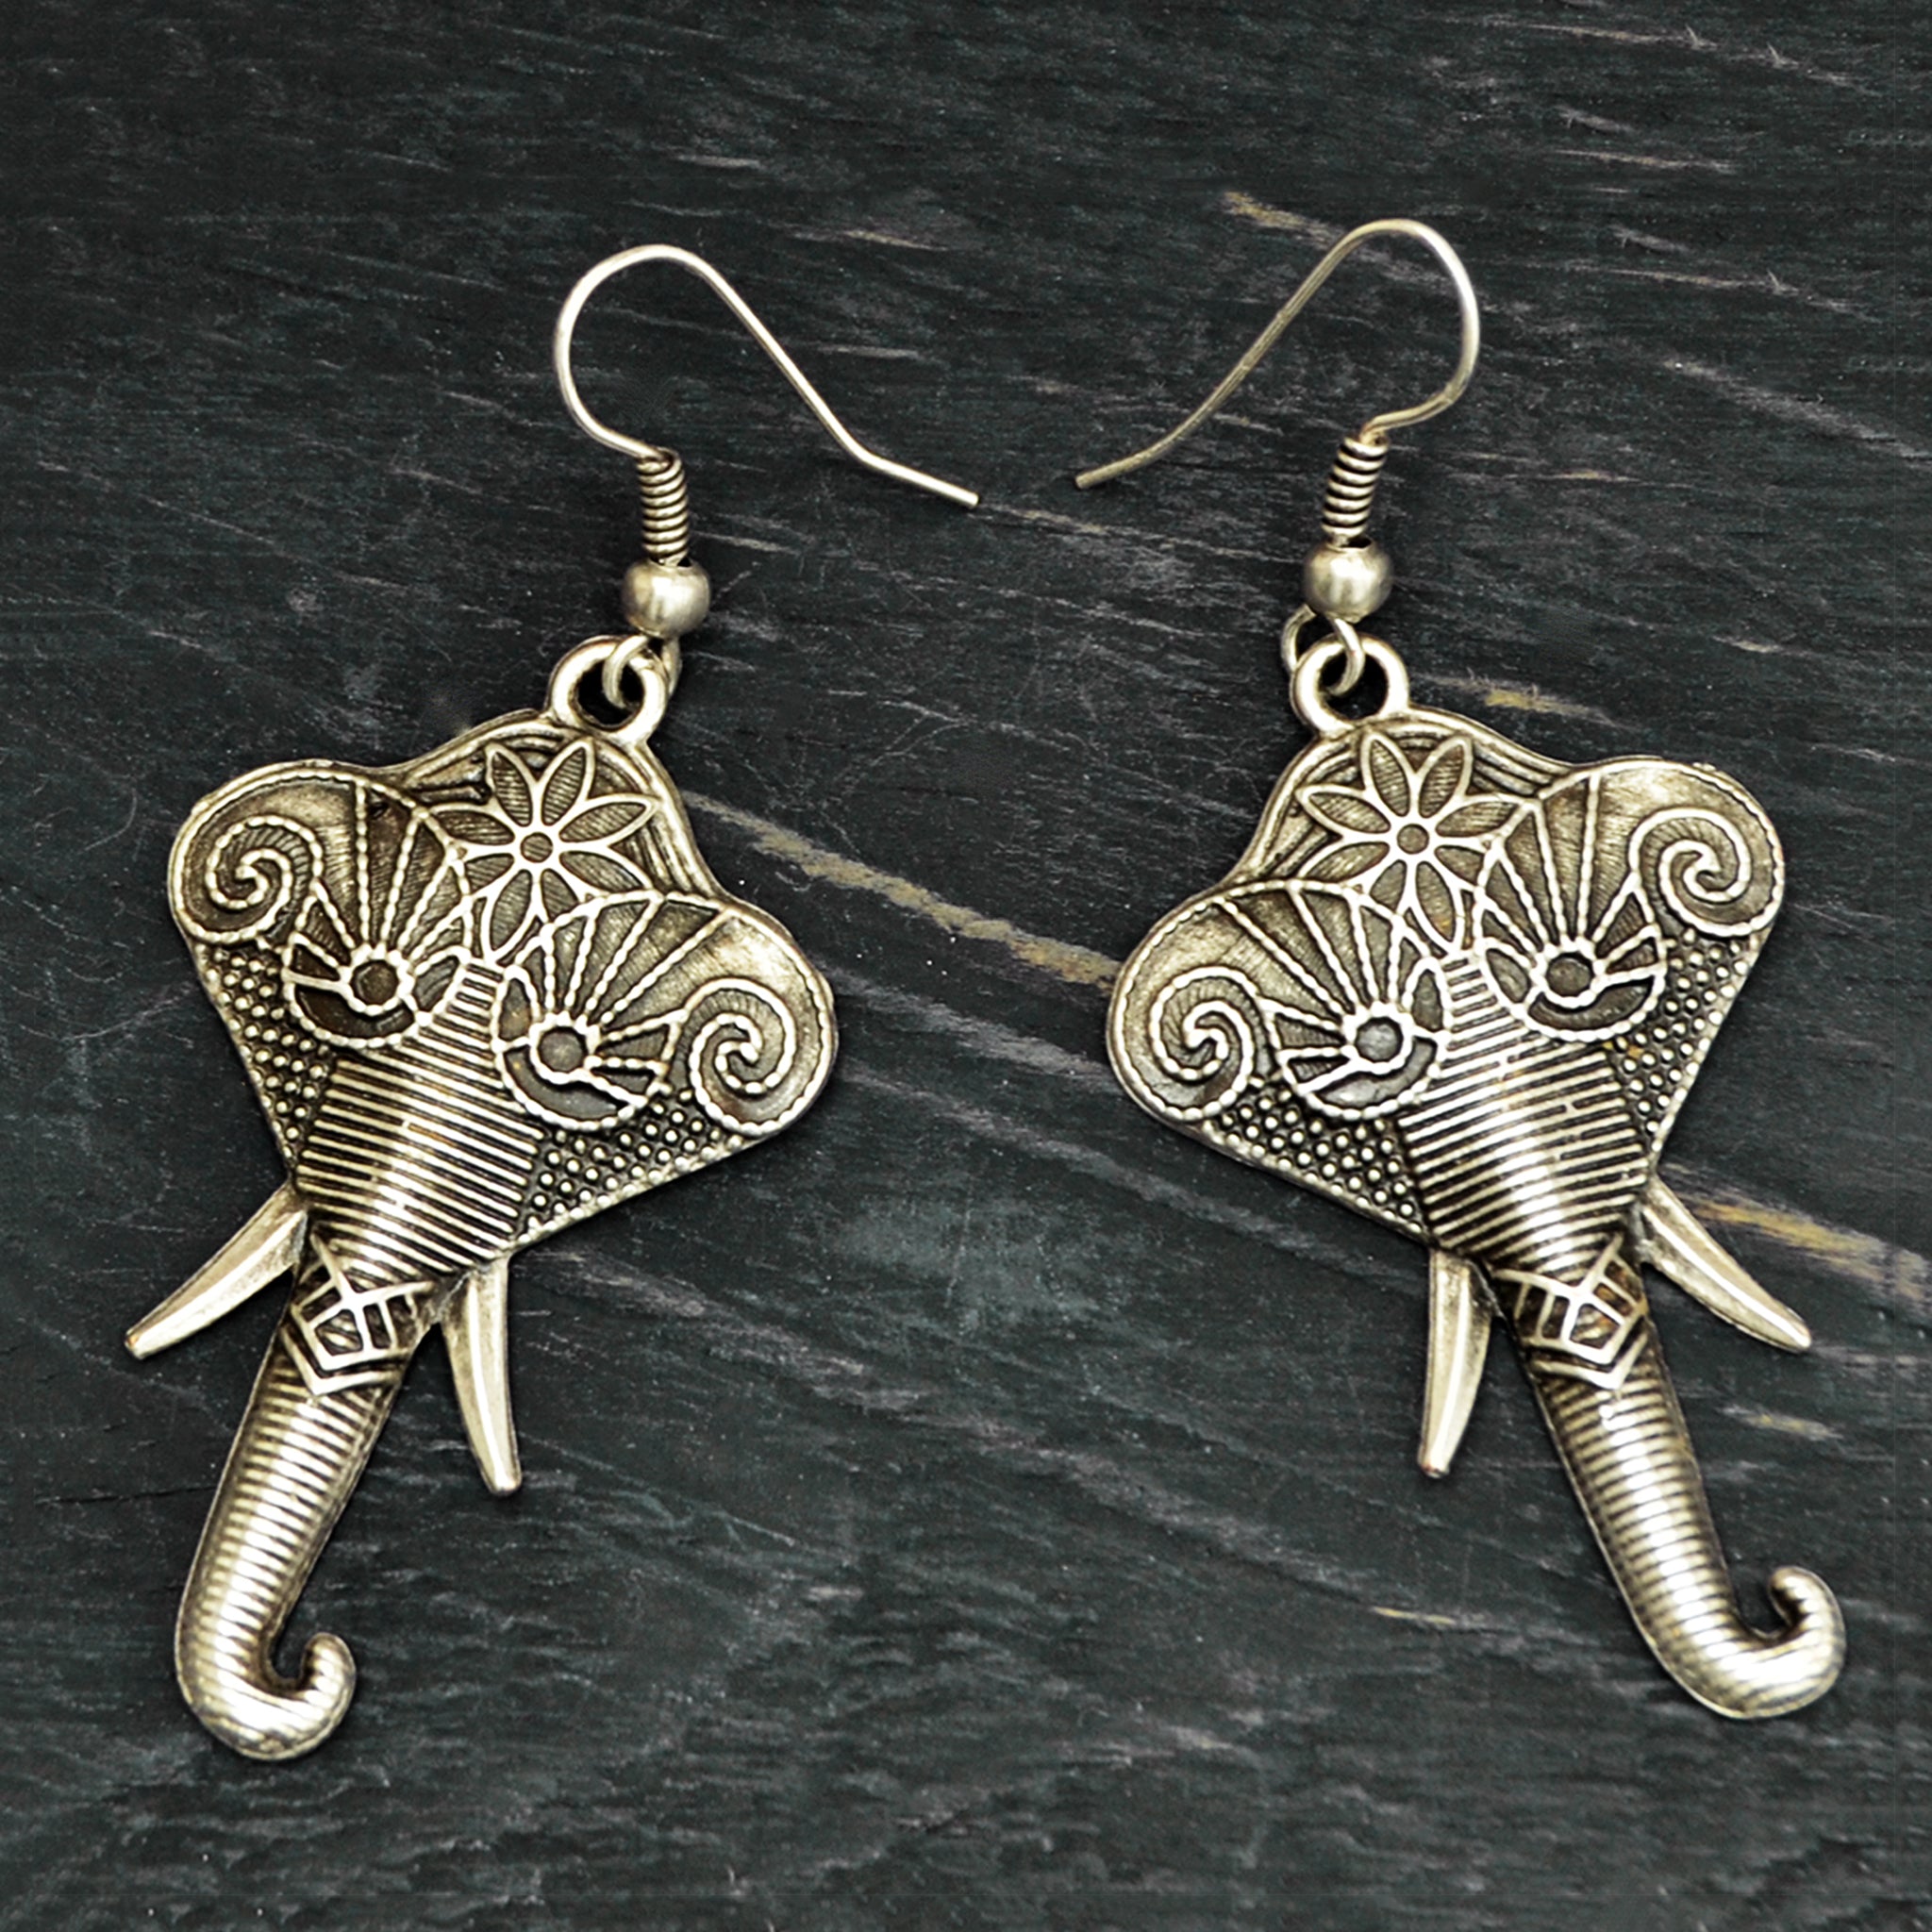 Silver elephant earrings